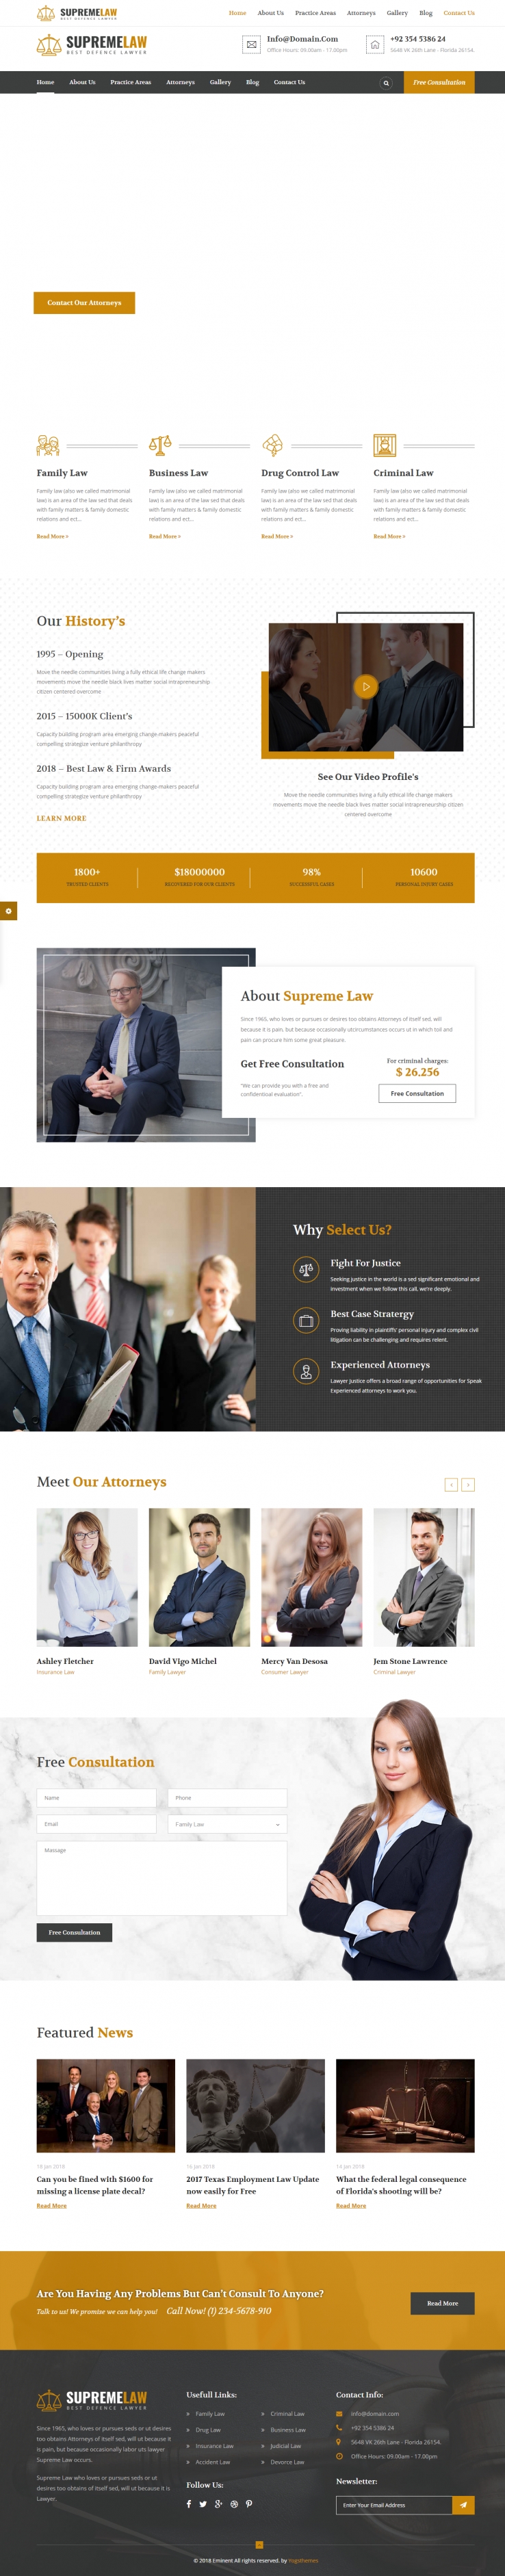 棕色欧美风格的律师法律顾问企业网站源码下载